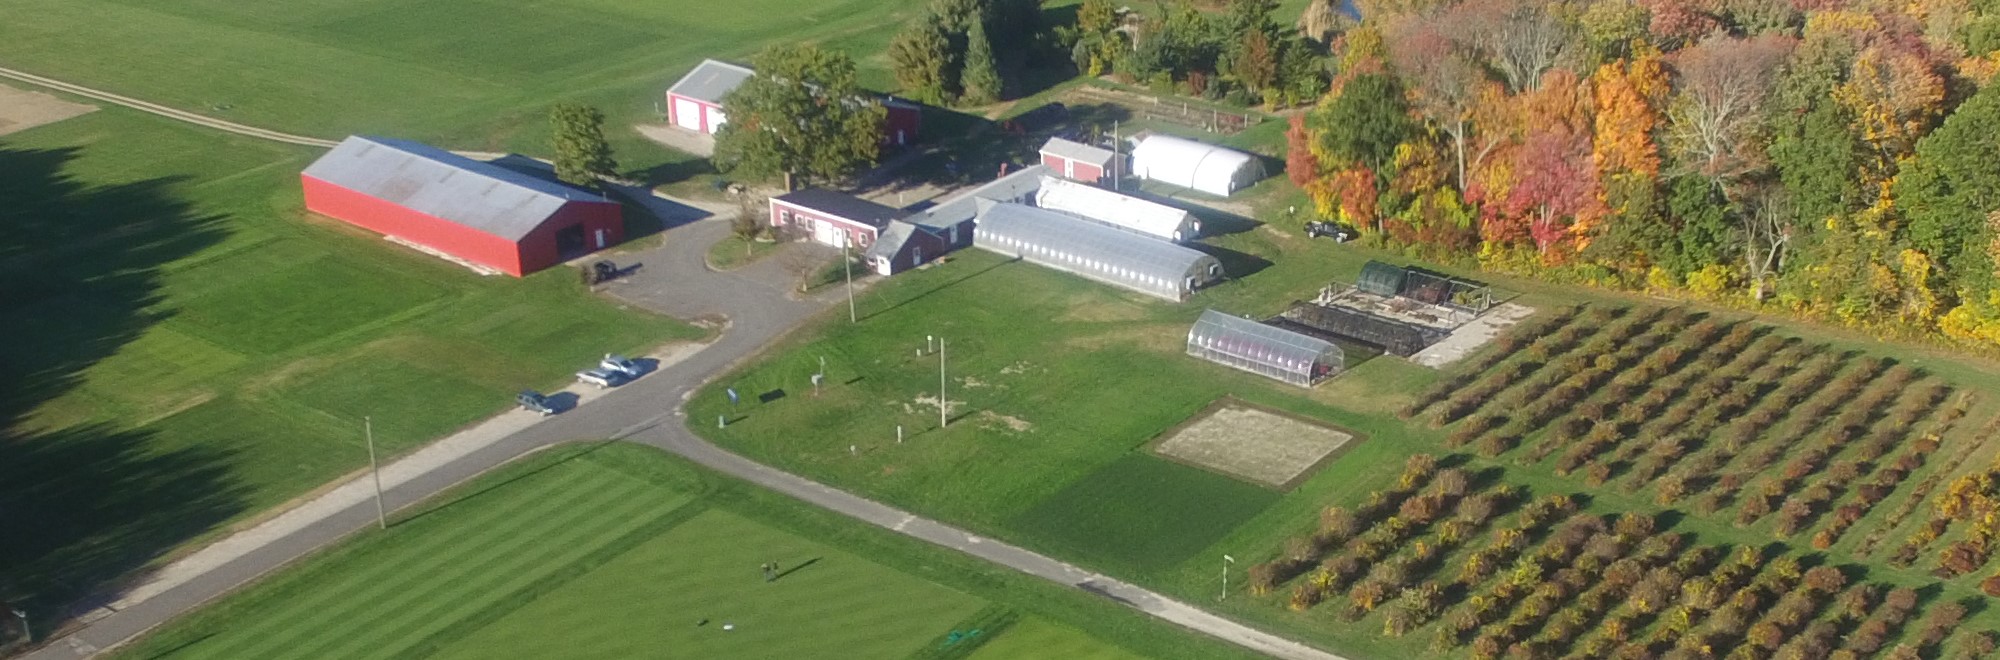 Fall drone research farm